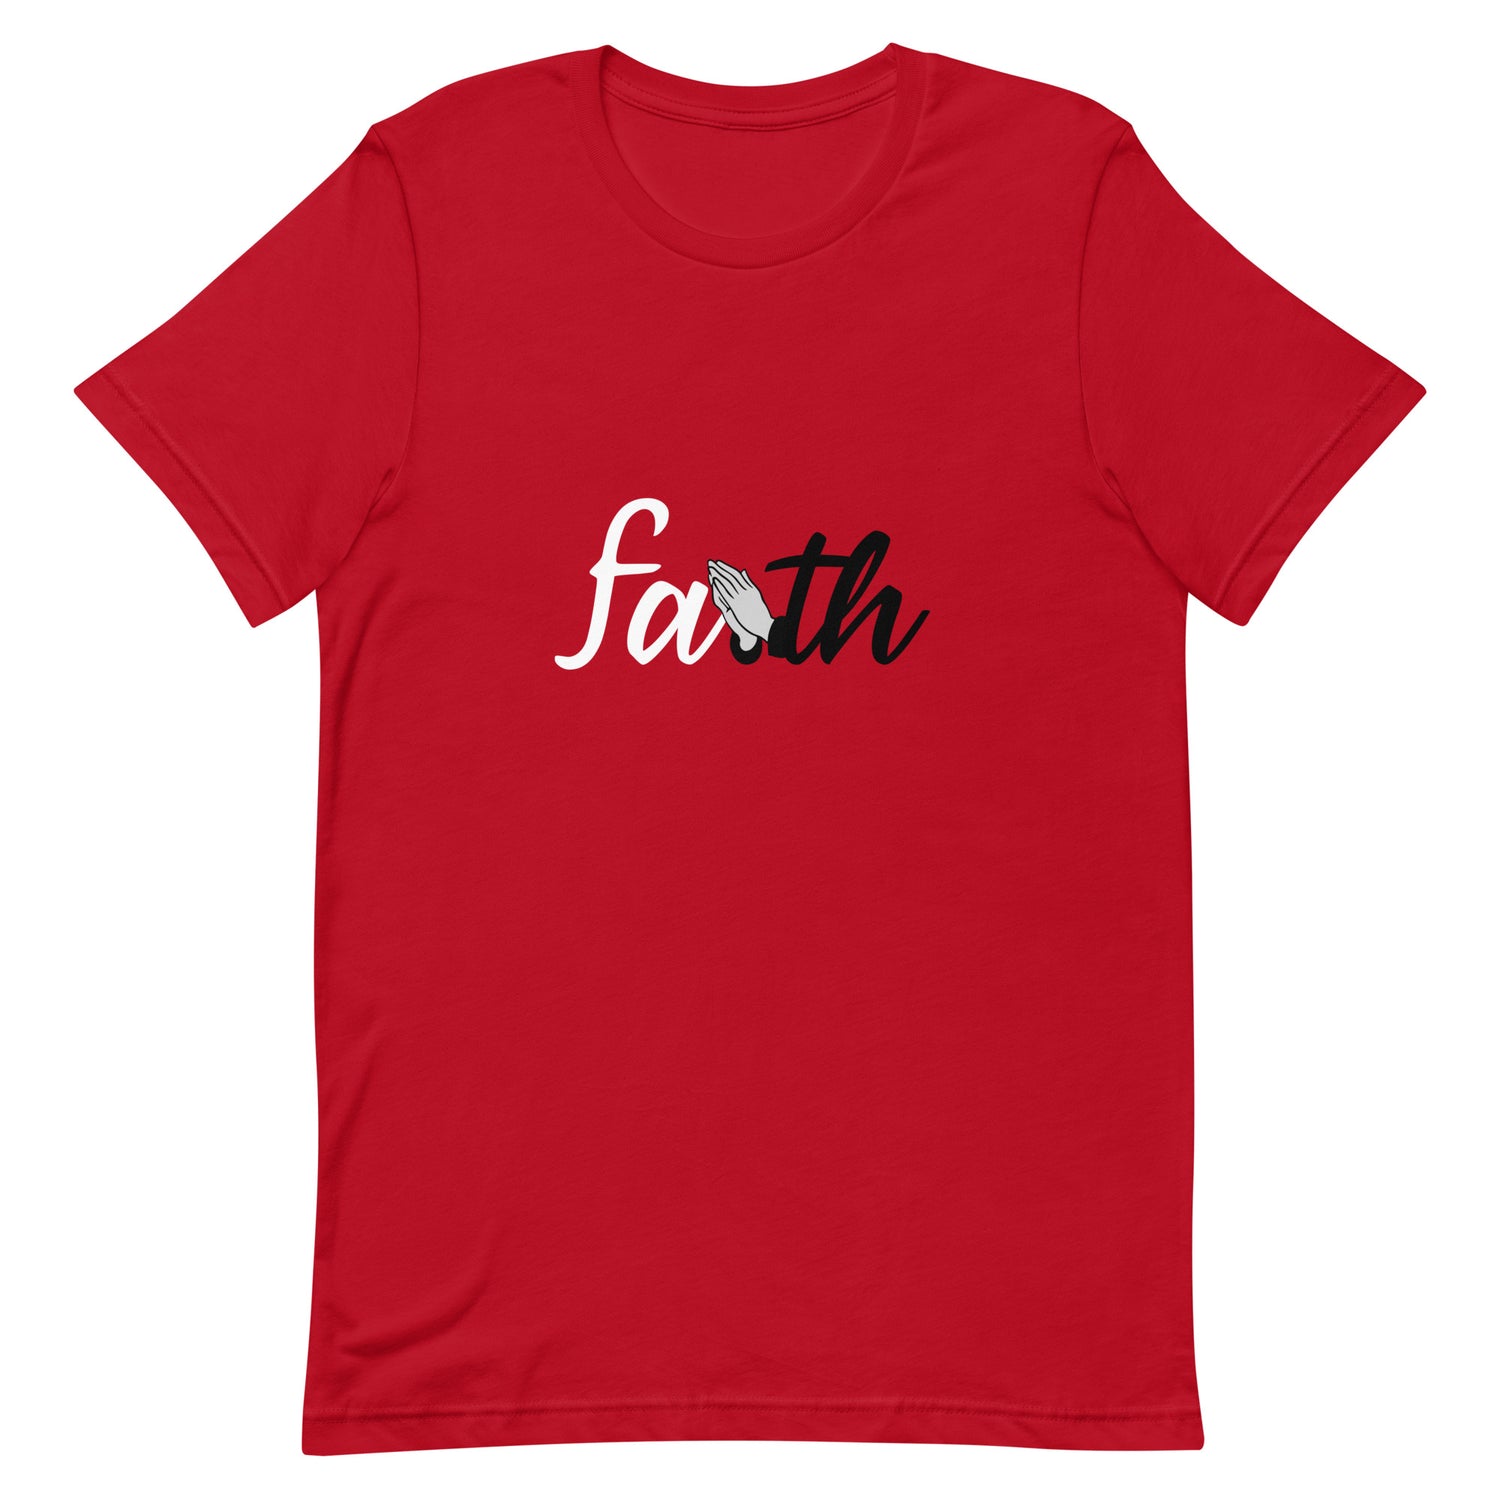 Faith shirt, religion shirt, have faith shirt